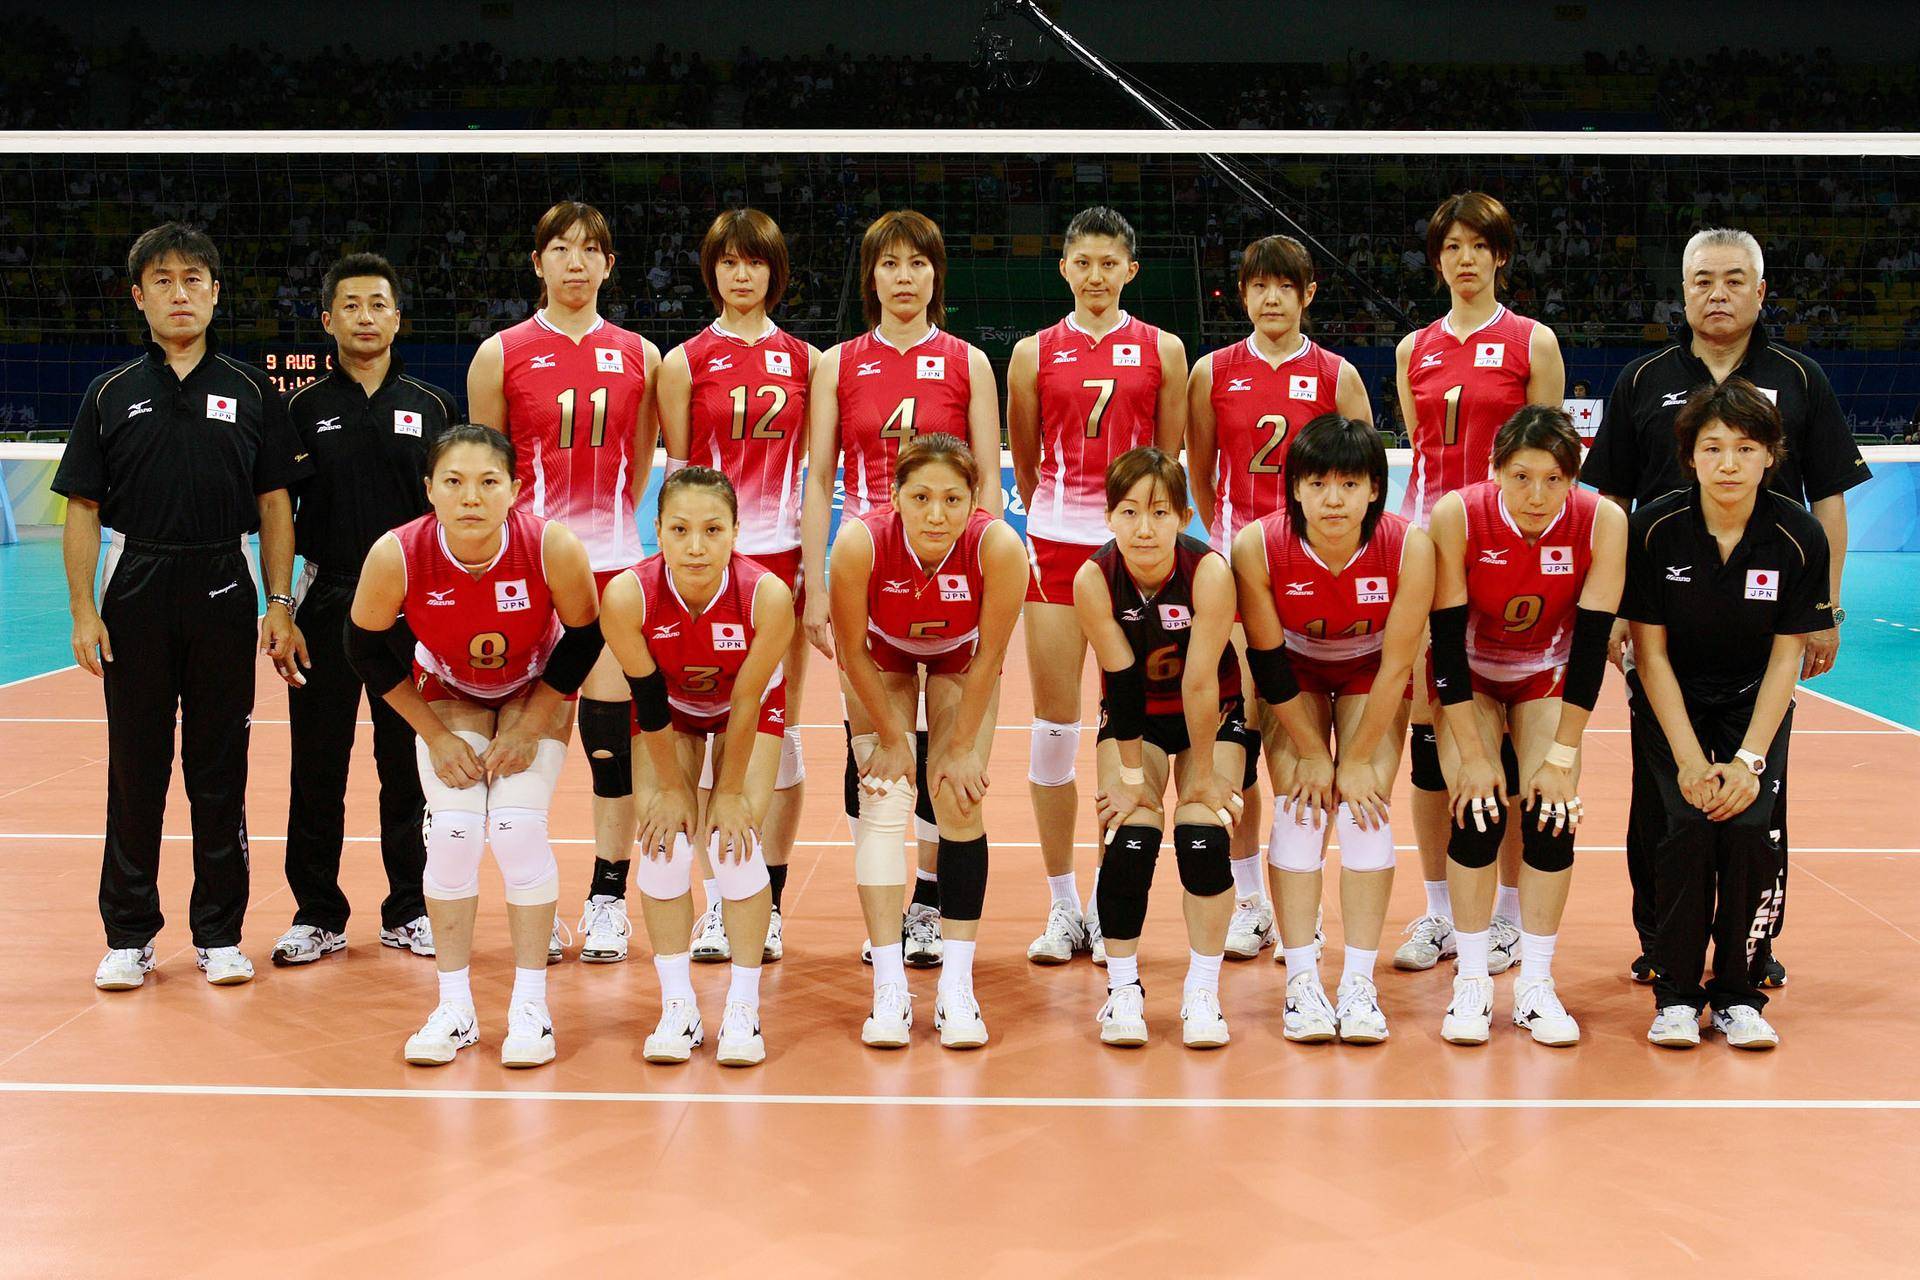 Đội hình bóng chuyền nữ Nhật Bản có chiều cao hạn chế